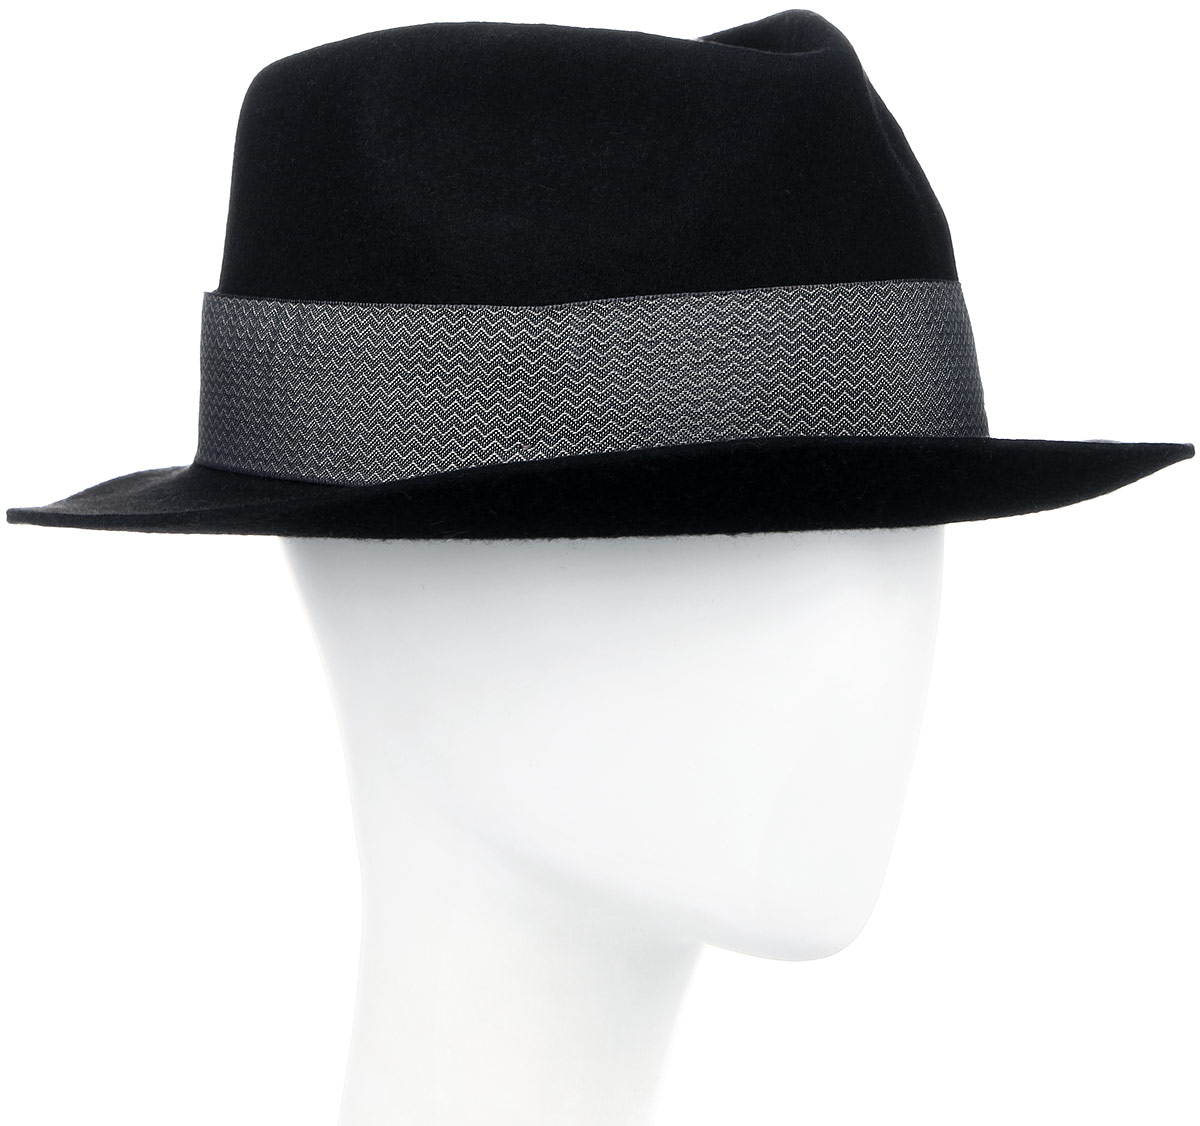 Шляпа Goorin Brothers, цвет: черный. 600-9305. Размер M (57)